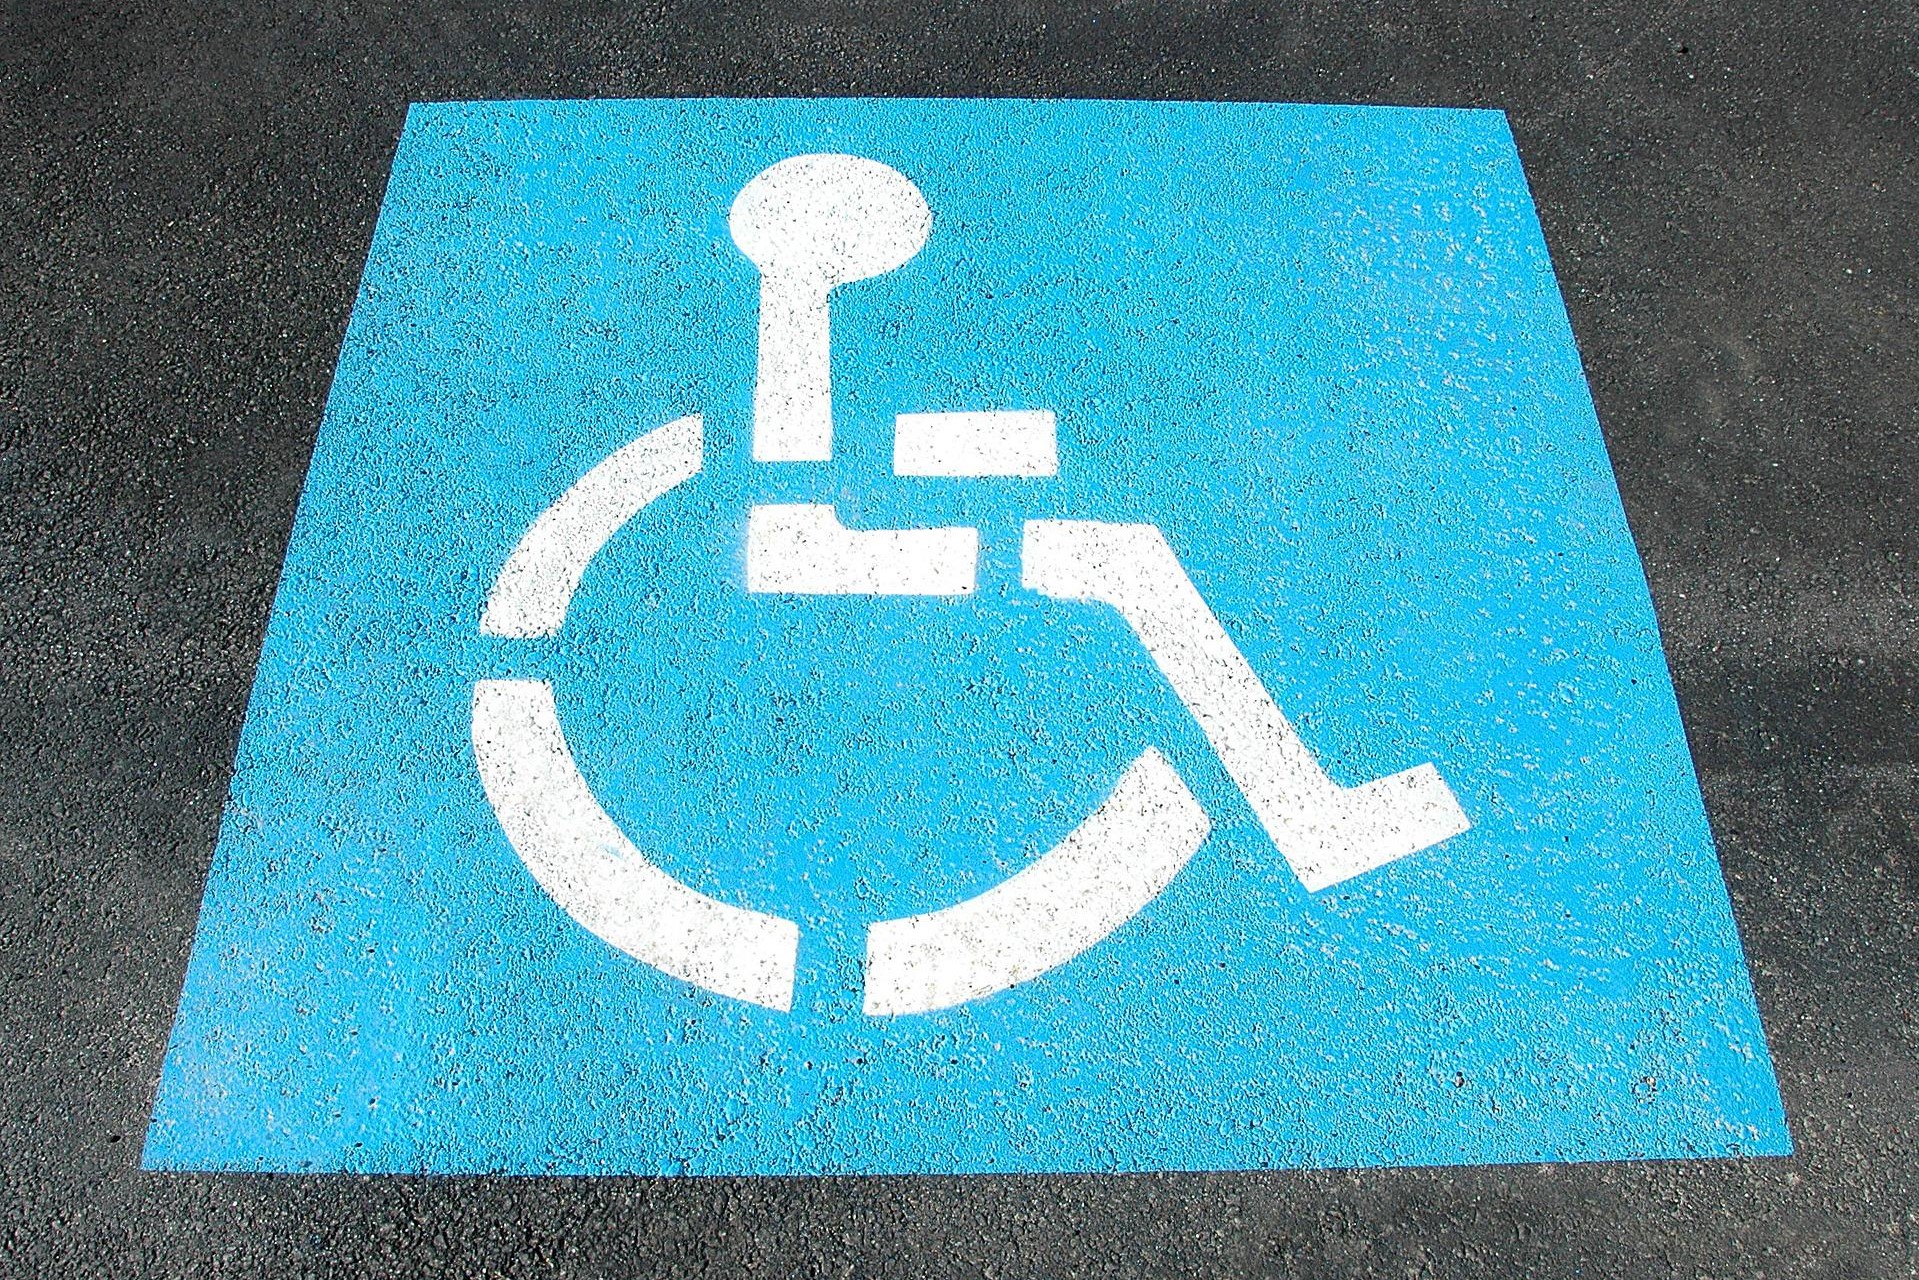 Disabilità e RdC: il simbolo di una carrozzina impresso sull'asfalto.